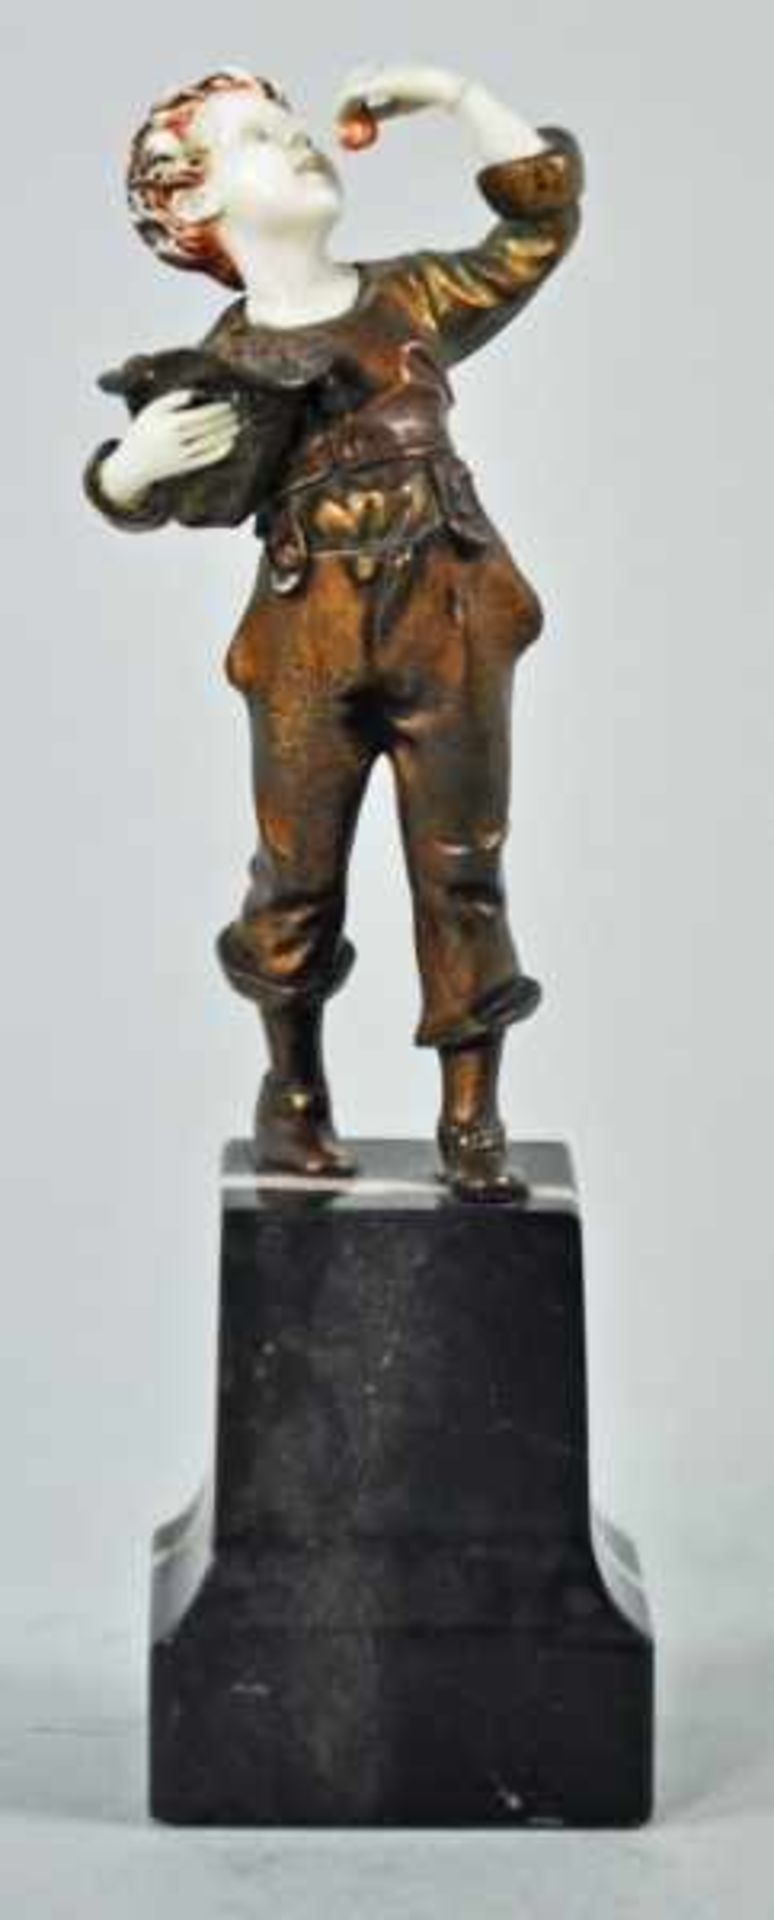 KIRSCHENESSER kleiner Junge beim Kirschen essen, chryselephantine Figur, vergoldete Bronze/Bein, auf